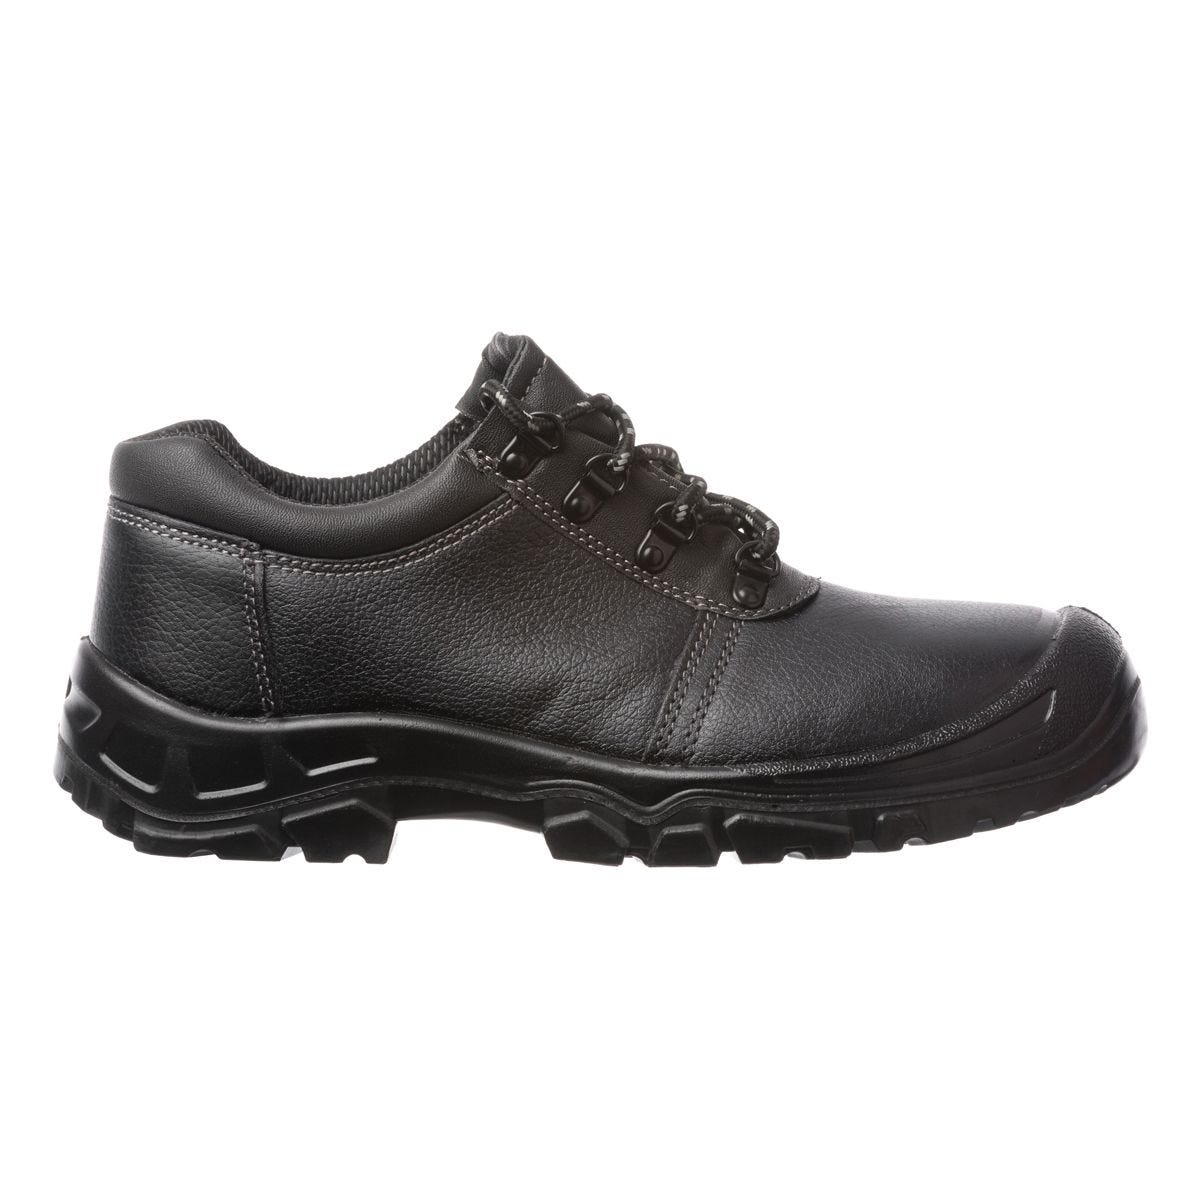 Chaussures de sécurité basses Azurite II S3 ESD noir - Coverguard - Taille 43 0